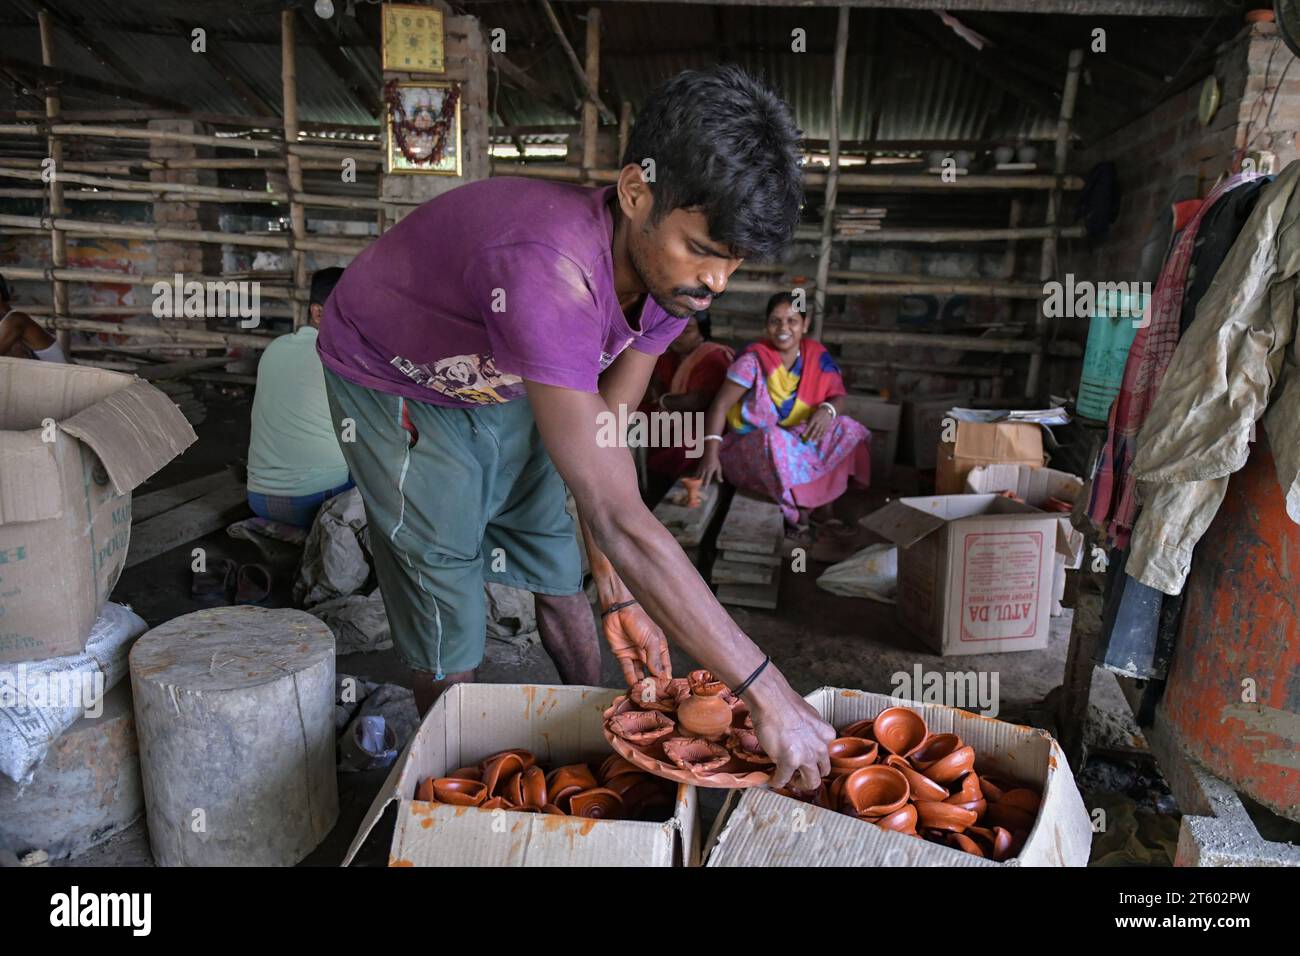 Ein Arbeiter sortiert Erdlampen im Töpferdorf Chaltaberia, rund 40 km von Kalkutta in Westbengalen. Das ganze Dorf ist im vollen Rhythmus der irdenen Lampen- und Idol-Produktion vor dem Diwali-Festival in Indien. Erdlampen werden in allen indischen Städten verkauft, wie Kalkutta, Delhi, Mumbai, Hyderabad, Gujarat, Assam, Patna und Rajasthan, besonders während der Festivalsaison. Sogar Erdlampen werden vor den Diwali-Feiern nach außerhalb Indiens exportiert. Stockfoto